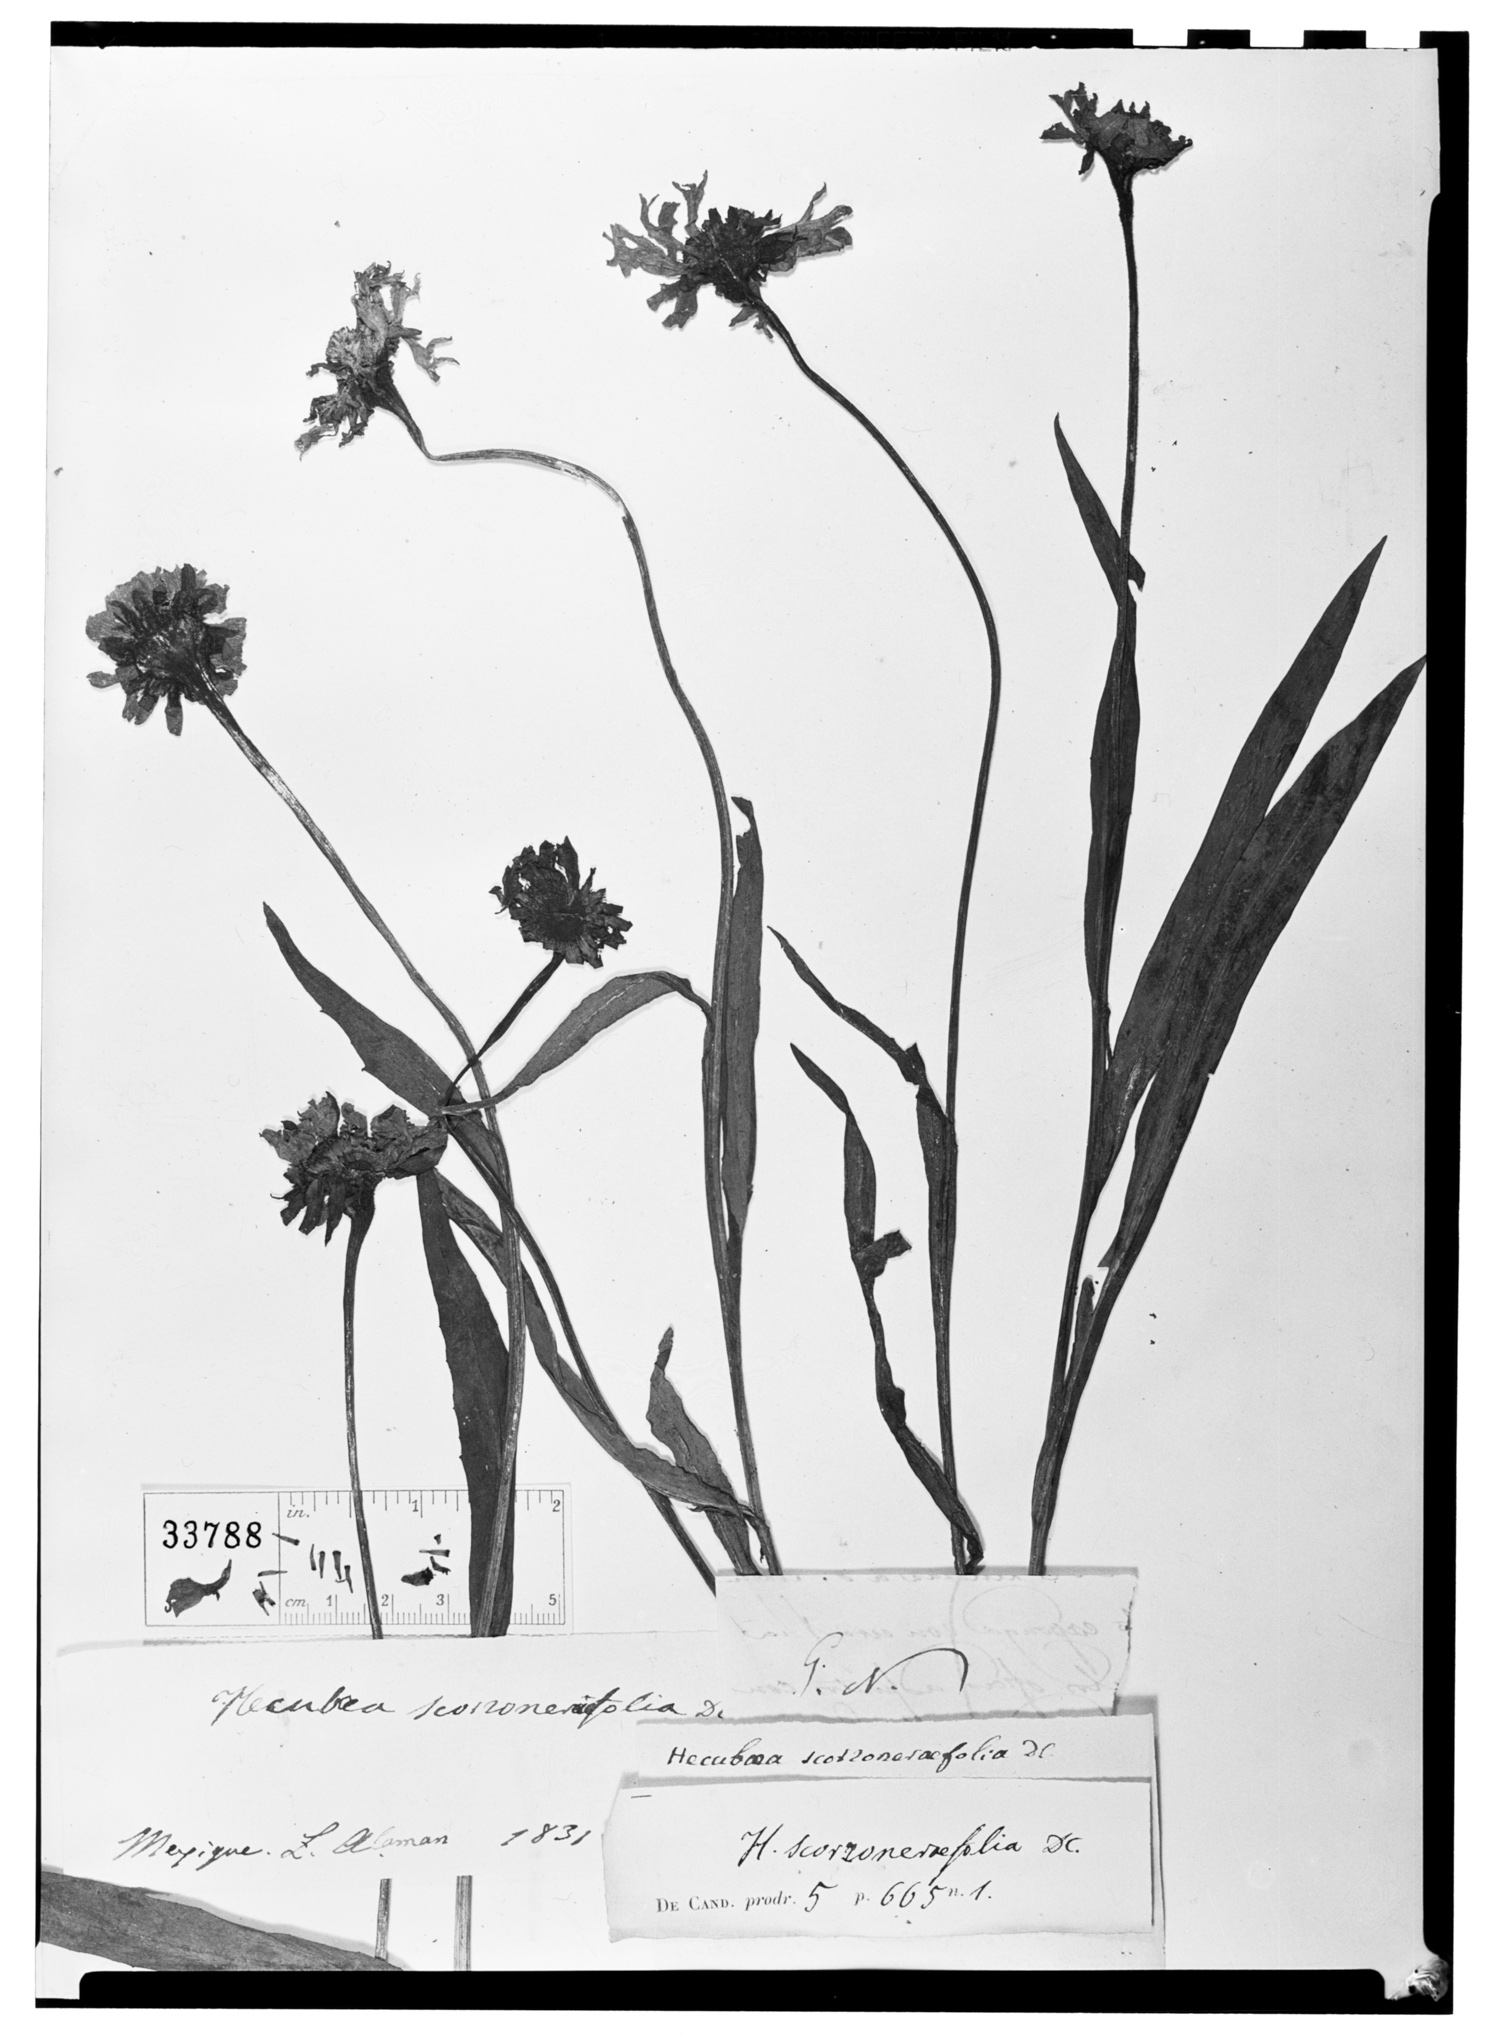 Helenium scorzoneraefolium image